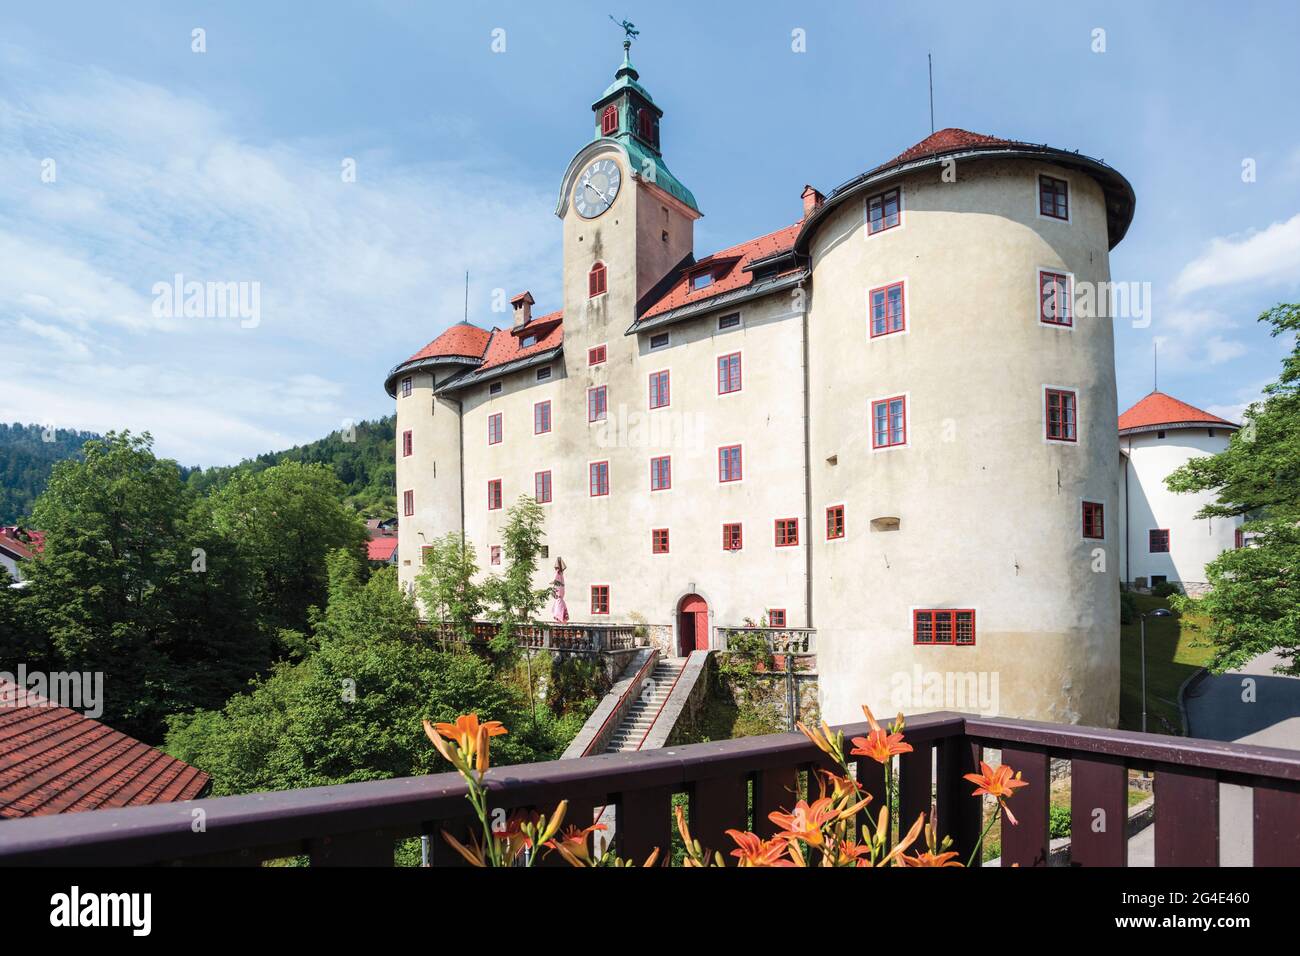 Idrija, Slowenisches Küstenland, Slowenien. Burg Gewerbeegg. Das Schloss beherbergt das Stadtmuseum, das die Geschichte des Quecksilberbergbaus in Idrija umfasst. Stockfoto